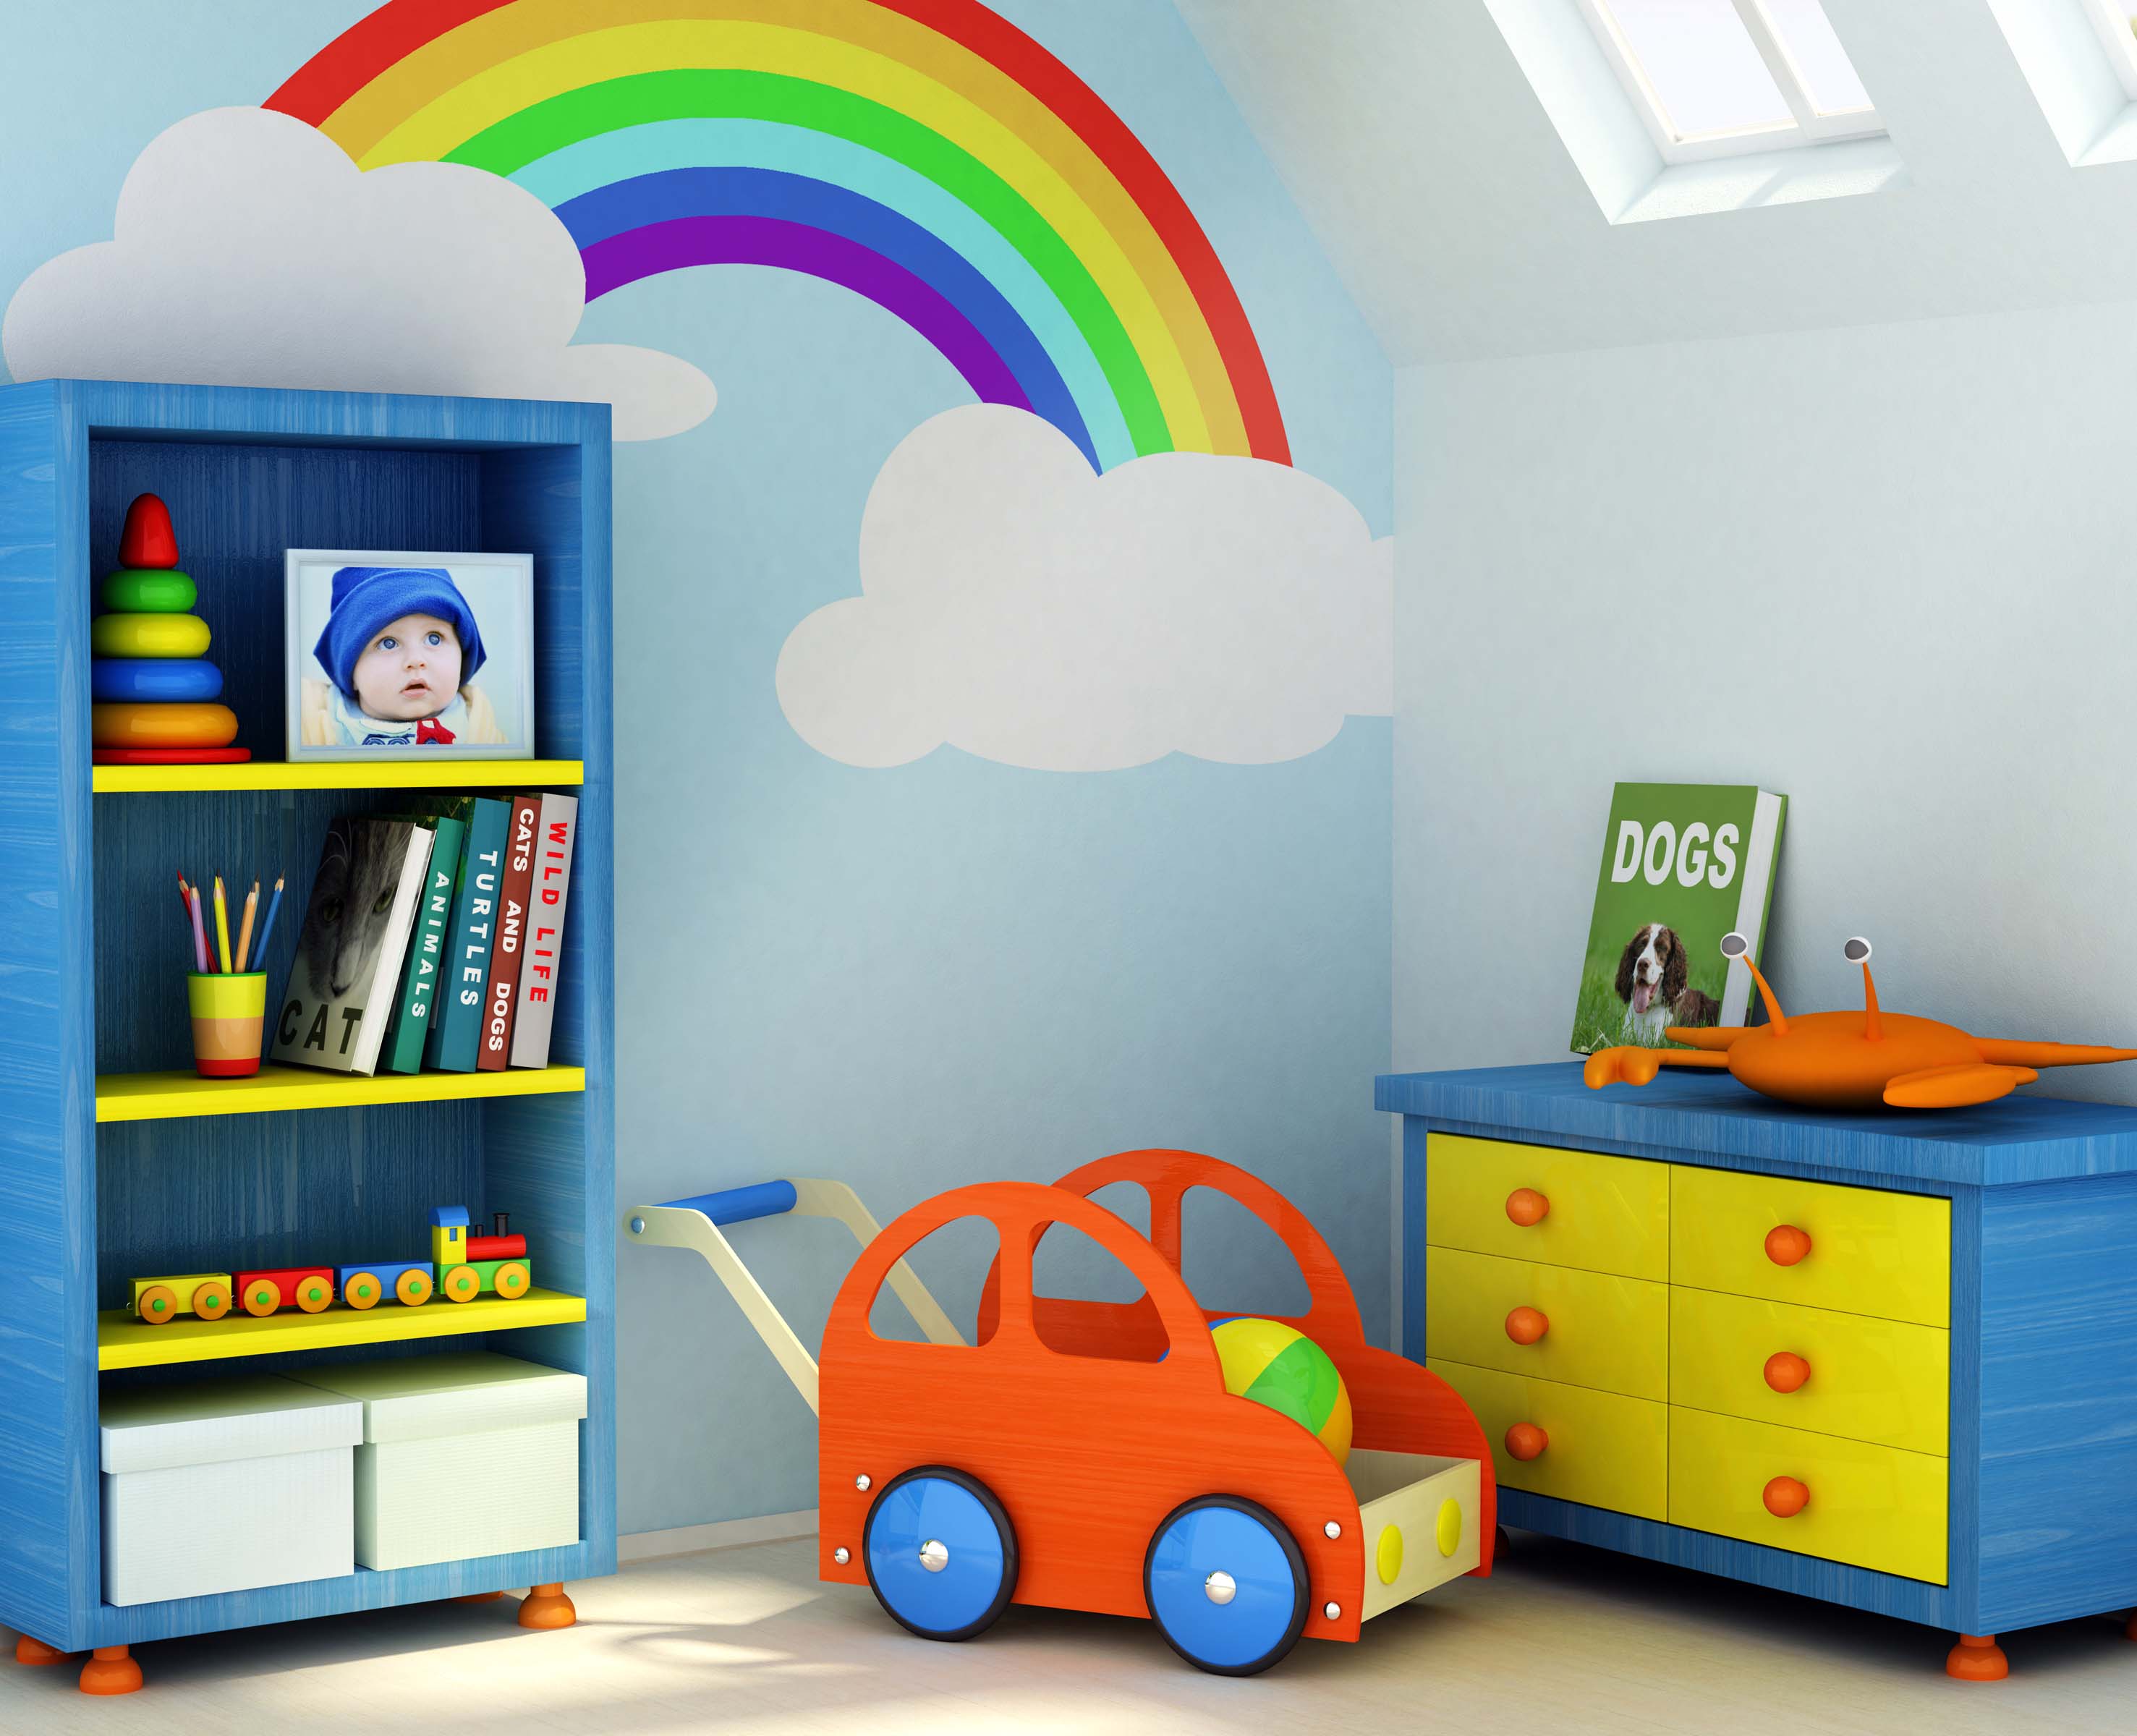 Как дома организовать пространство для малышей 1-3 лет